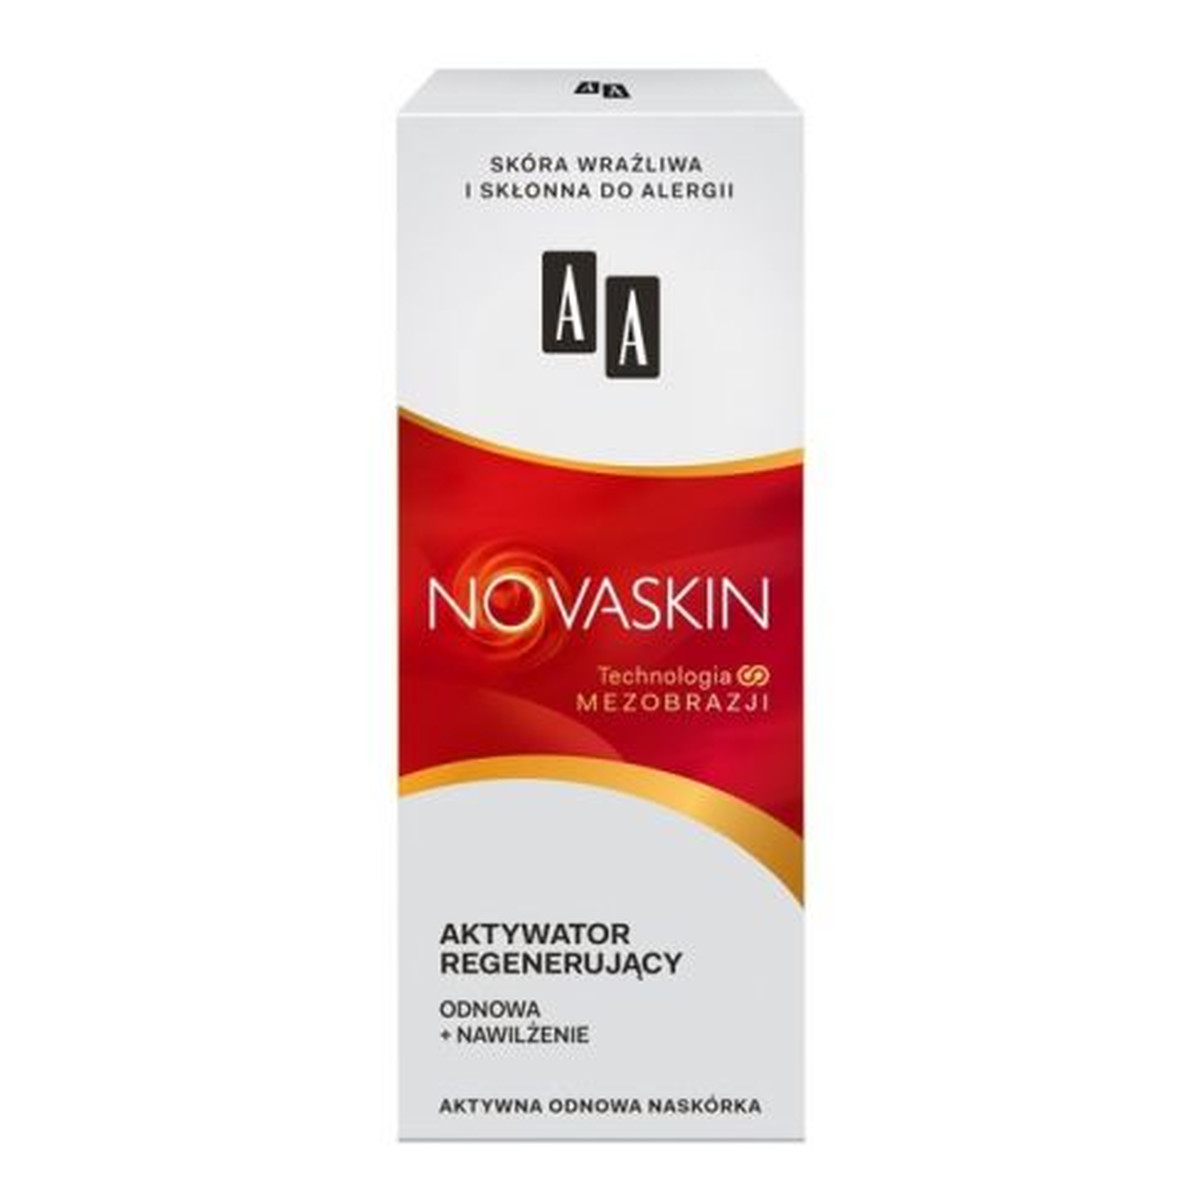 AA Cosmetics Novaskin Technologia Mezobrazji Aktywator Regenerujący odnawiająco-nawilżający 30ml